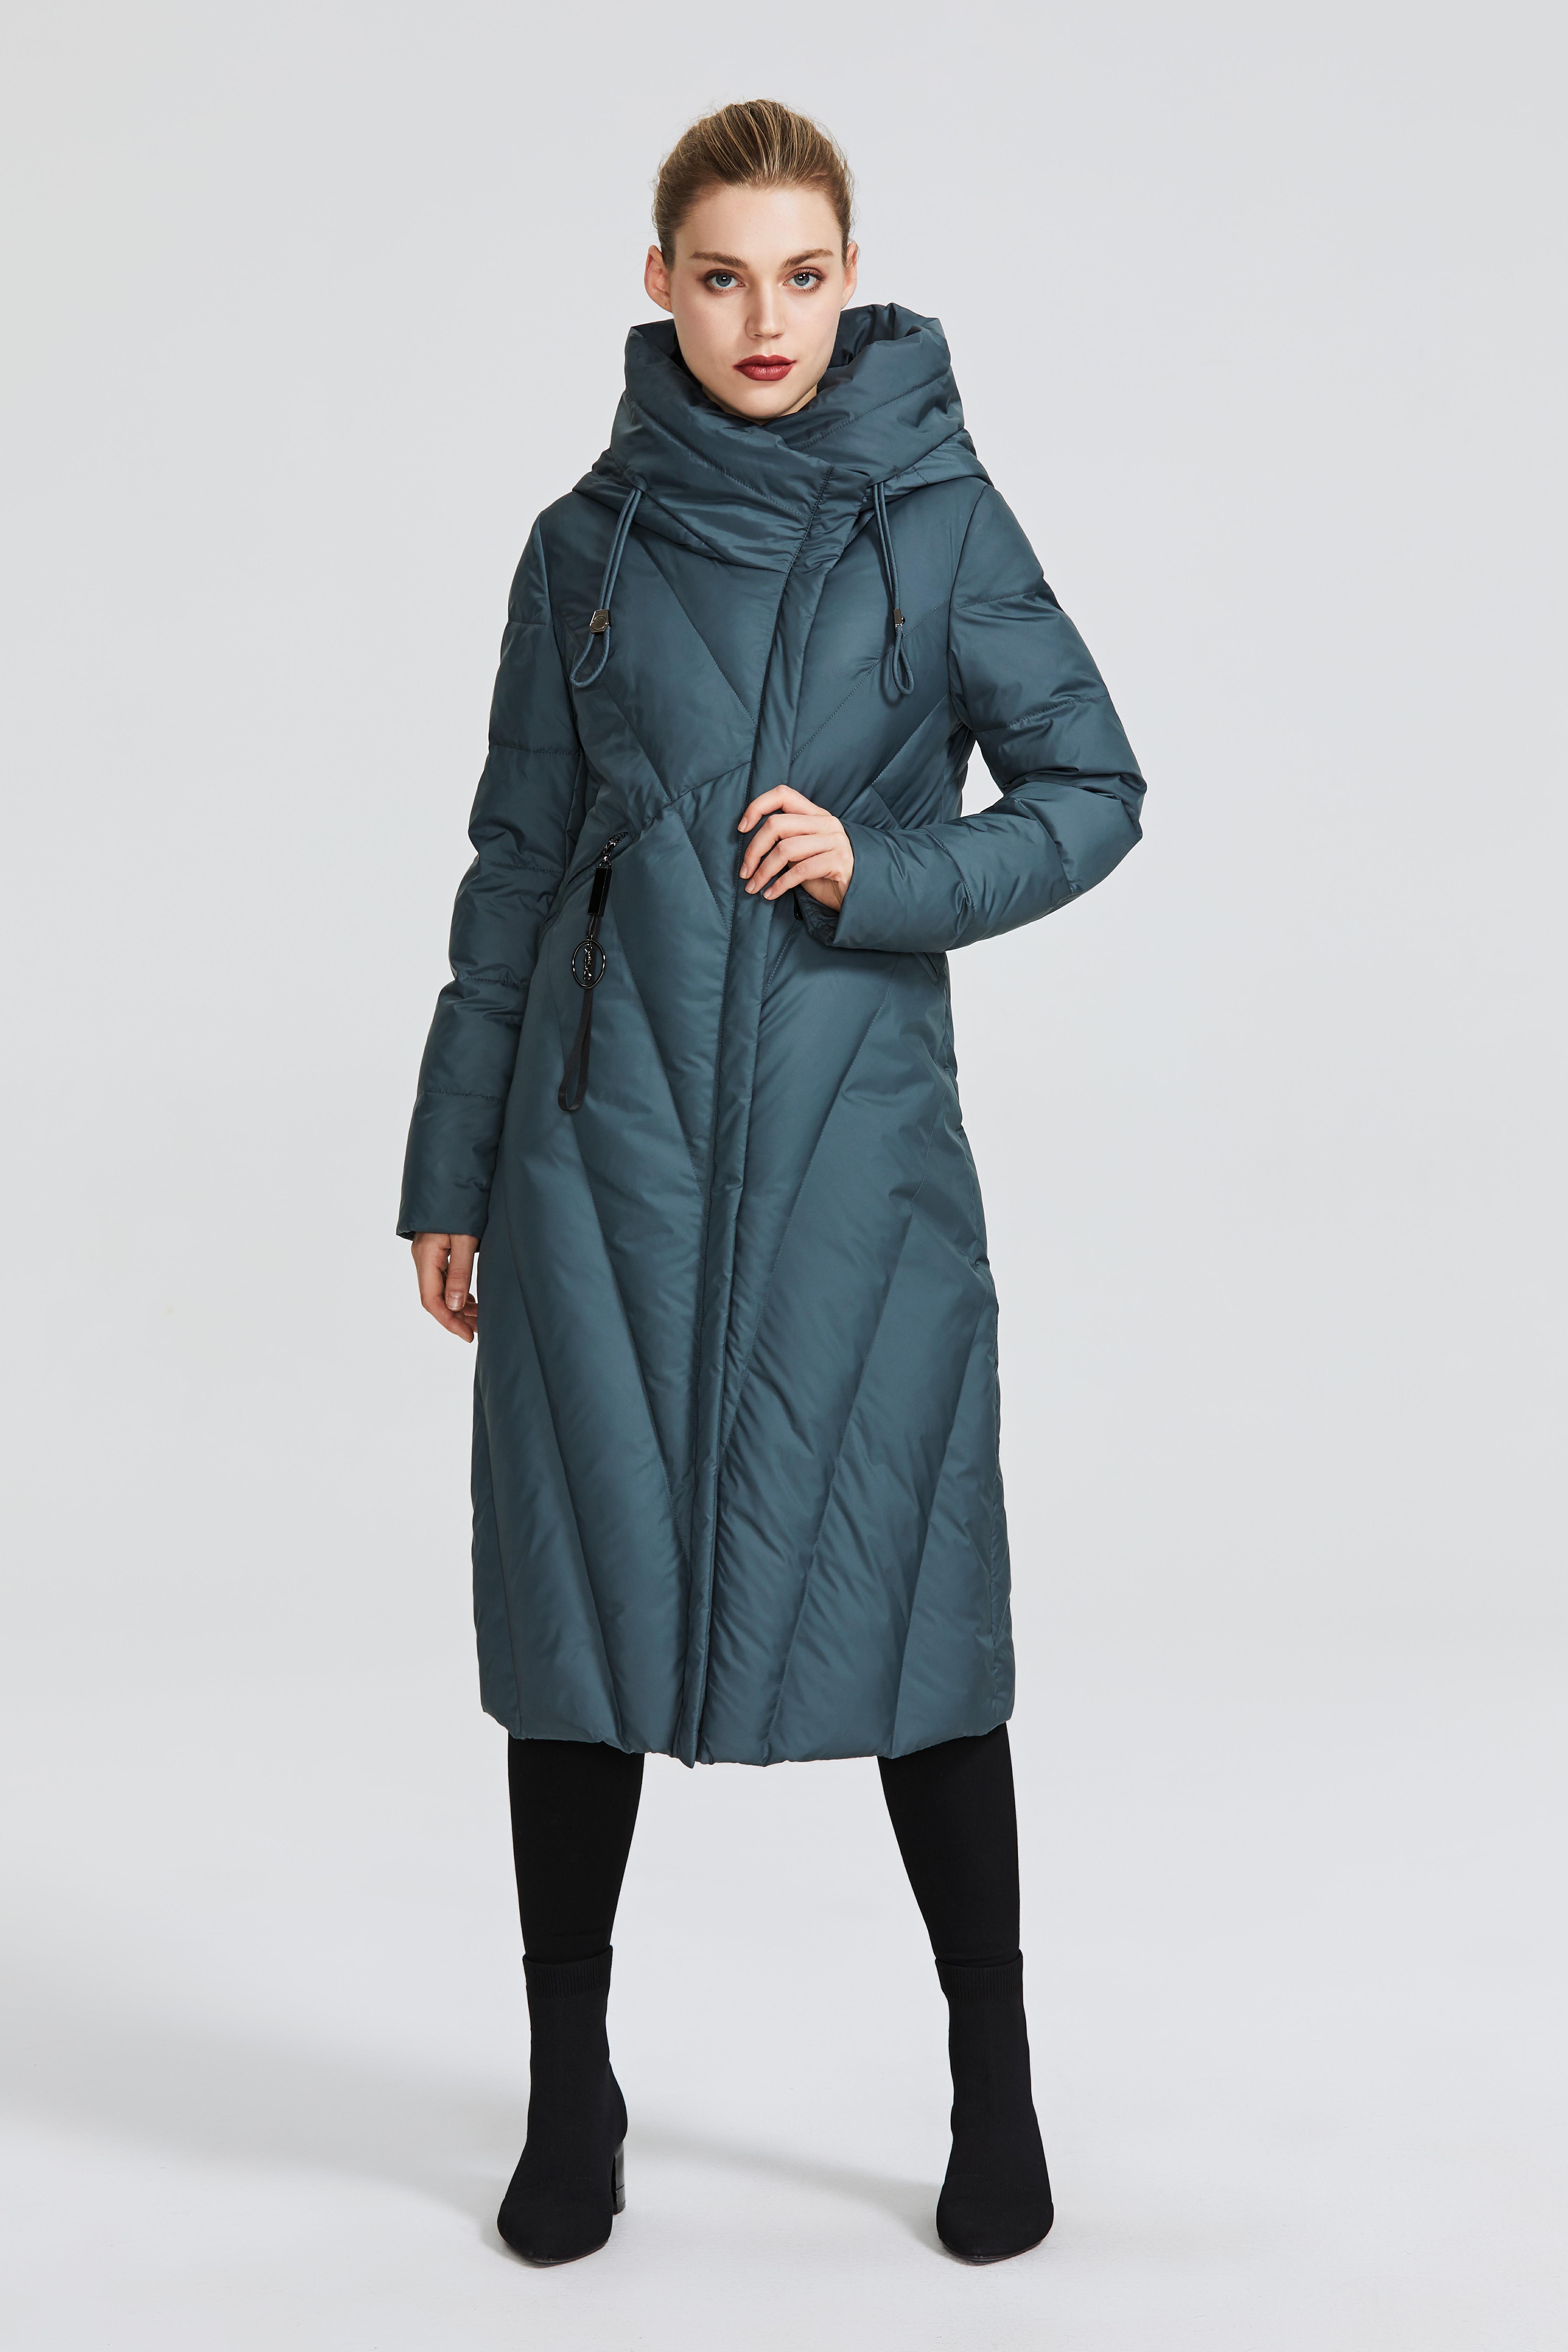 Miegofce d99266 Новая коллекция женские пальто с устойчивым ветрозащитным воротником Женщины Parka